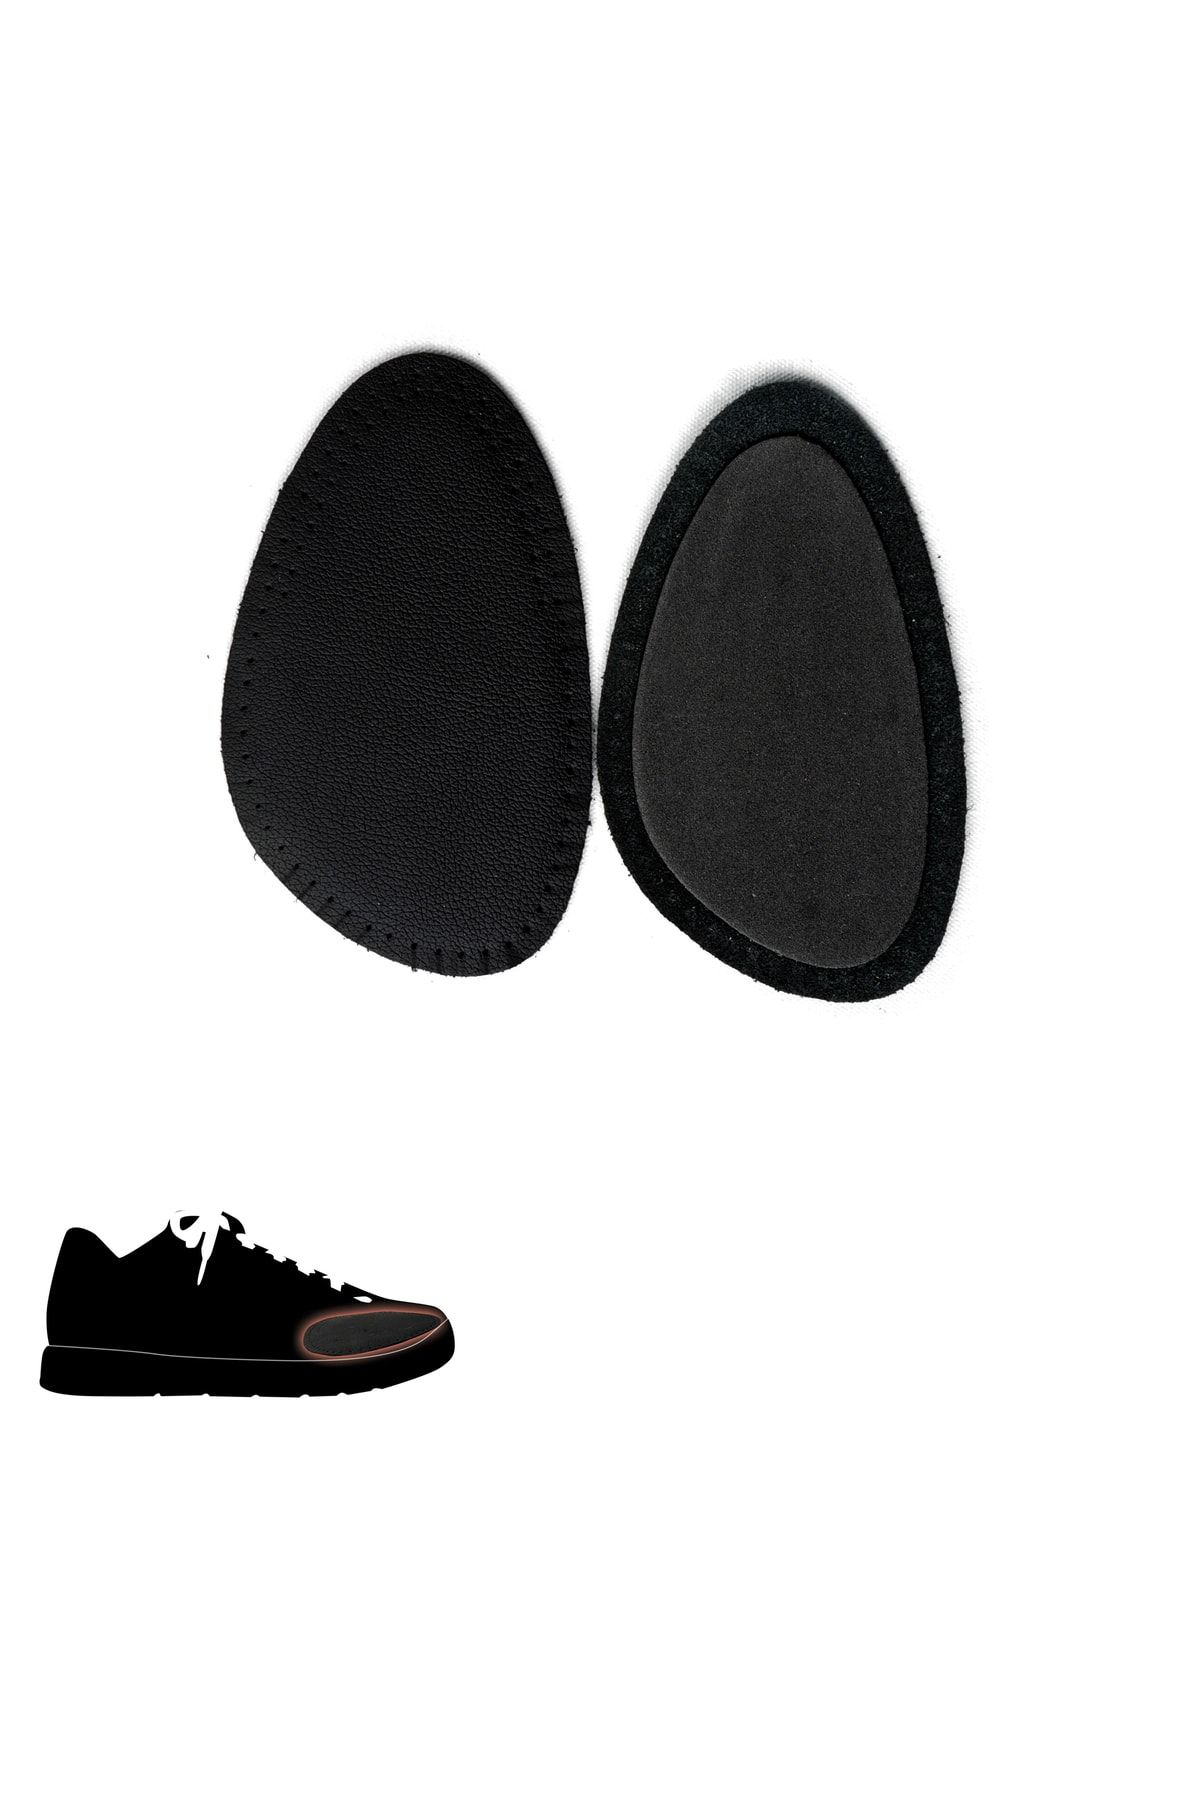 Black Vein Ayakkabı Küçültme Pedi Deri,ayakkabı Daraltma Pedi